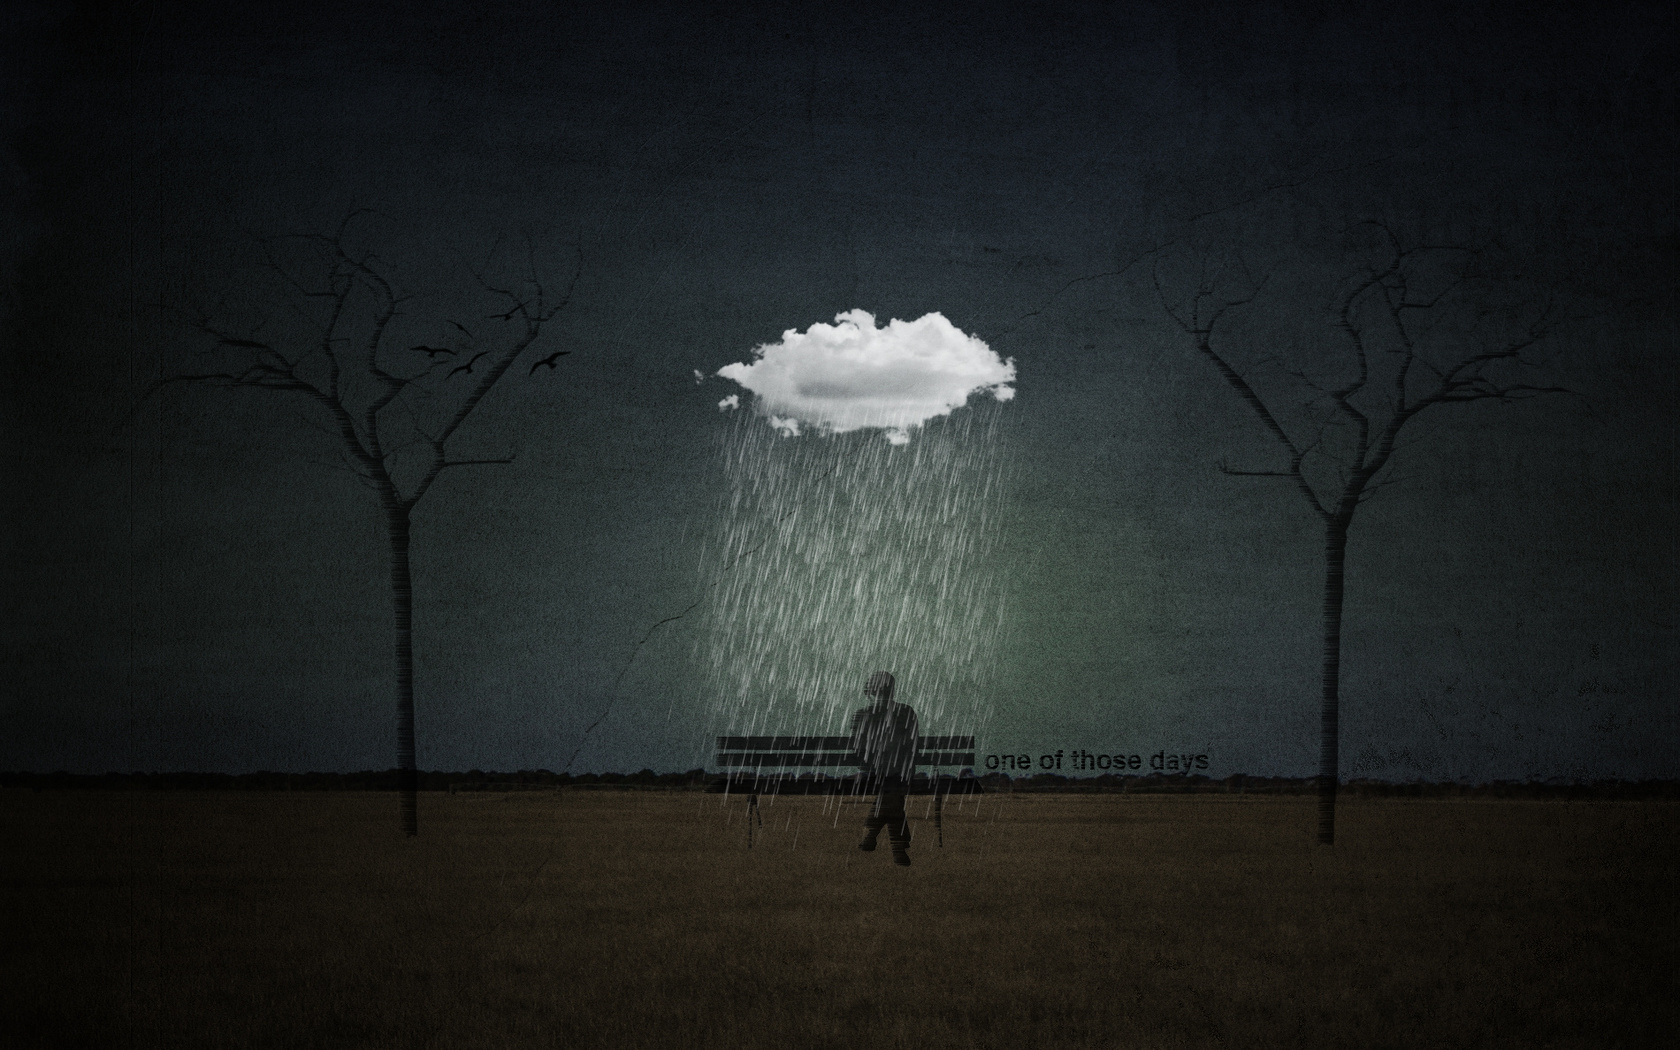 3d обои Грустная картина, мужчина сидит на лавочке и мокнет под дождём, рядом надпись one of those days  ретушь # 76409